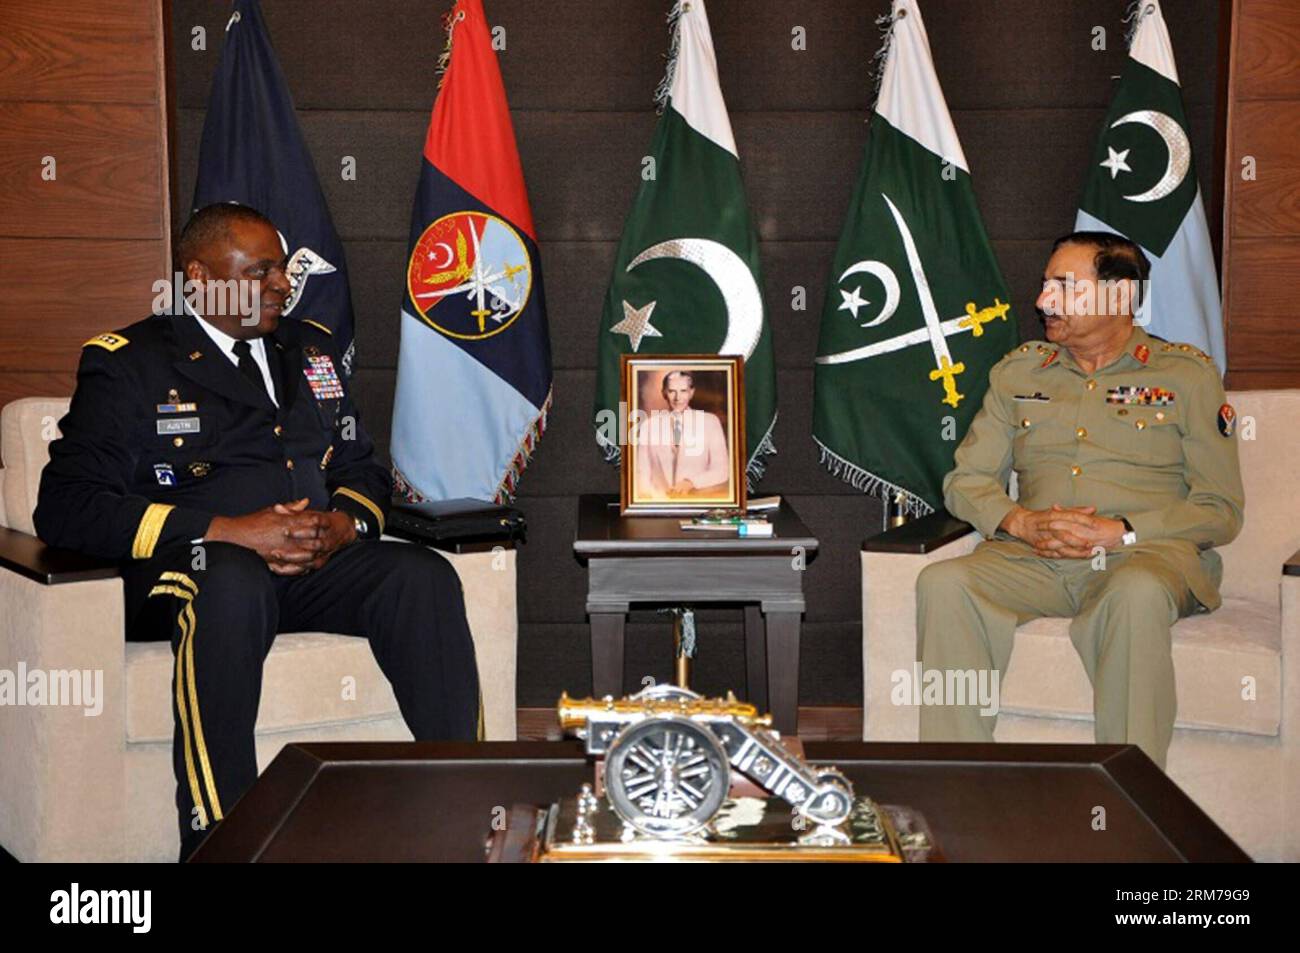 (140219) -- RAWALPINDI, 19 février 2014 (Xinhua) -- une photo publiée par les relations publiques inter-services des Forces armées pakistanaises (ISPR) le 19 février 201 montre que le commandant du Commandement central américain, le général Lloyd J. Austin III (L), rencontre le général pakistanais Rashad Mahmood, président du Comité des chefs d'état-major interarmées à Rawalpindi, au Pakistan. Le commandant du Commandement central des États-Unis, le général Lloyd J. Austin III, a rencontré mercredi de hauts responsables militaires pakistanais et a discuté de questions liées à la situation de la sécurité régionale, en mettant particulièrement l'accent sur l'Afghanistan, a déclaré l'armée pakistanaise. (Xinhua/ISPR) PAKIST Banque D'Images